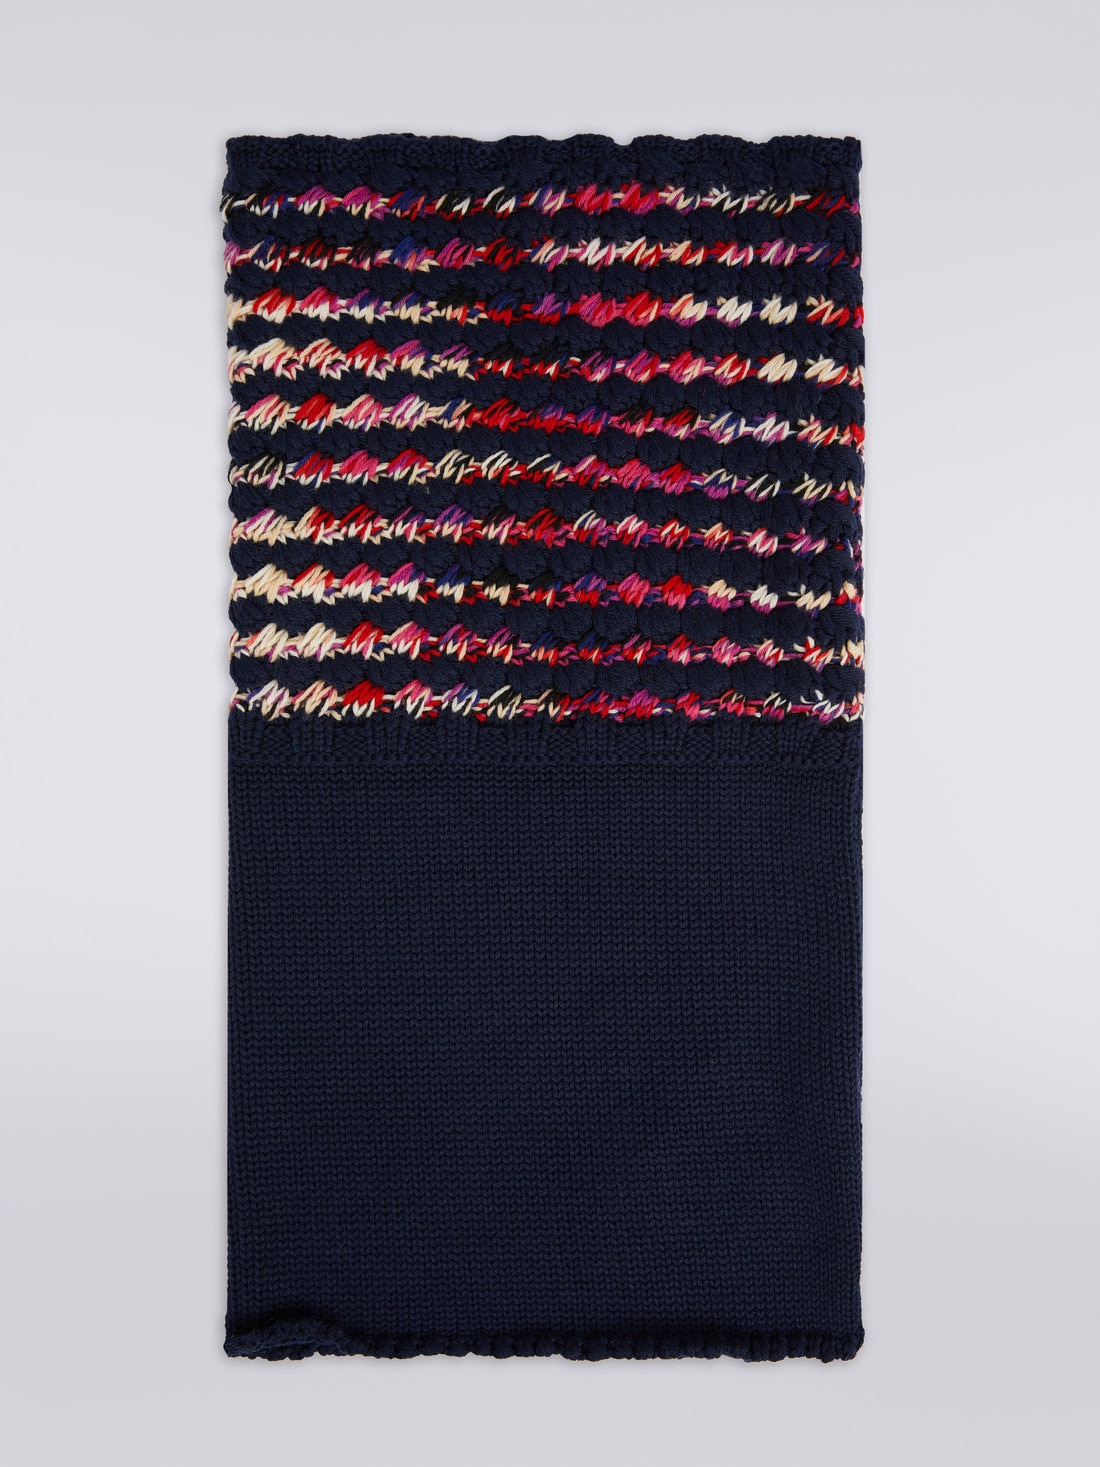 Scaldacollo in maglia di lana multilavorata, Multicolore  - 8053147024011 - 0